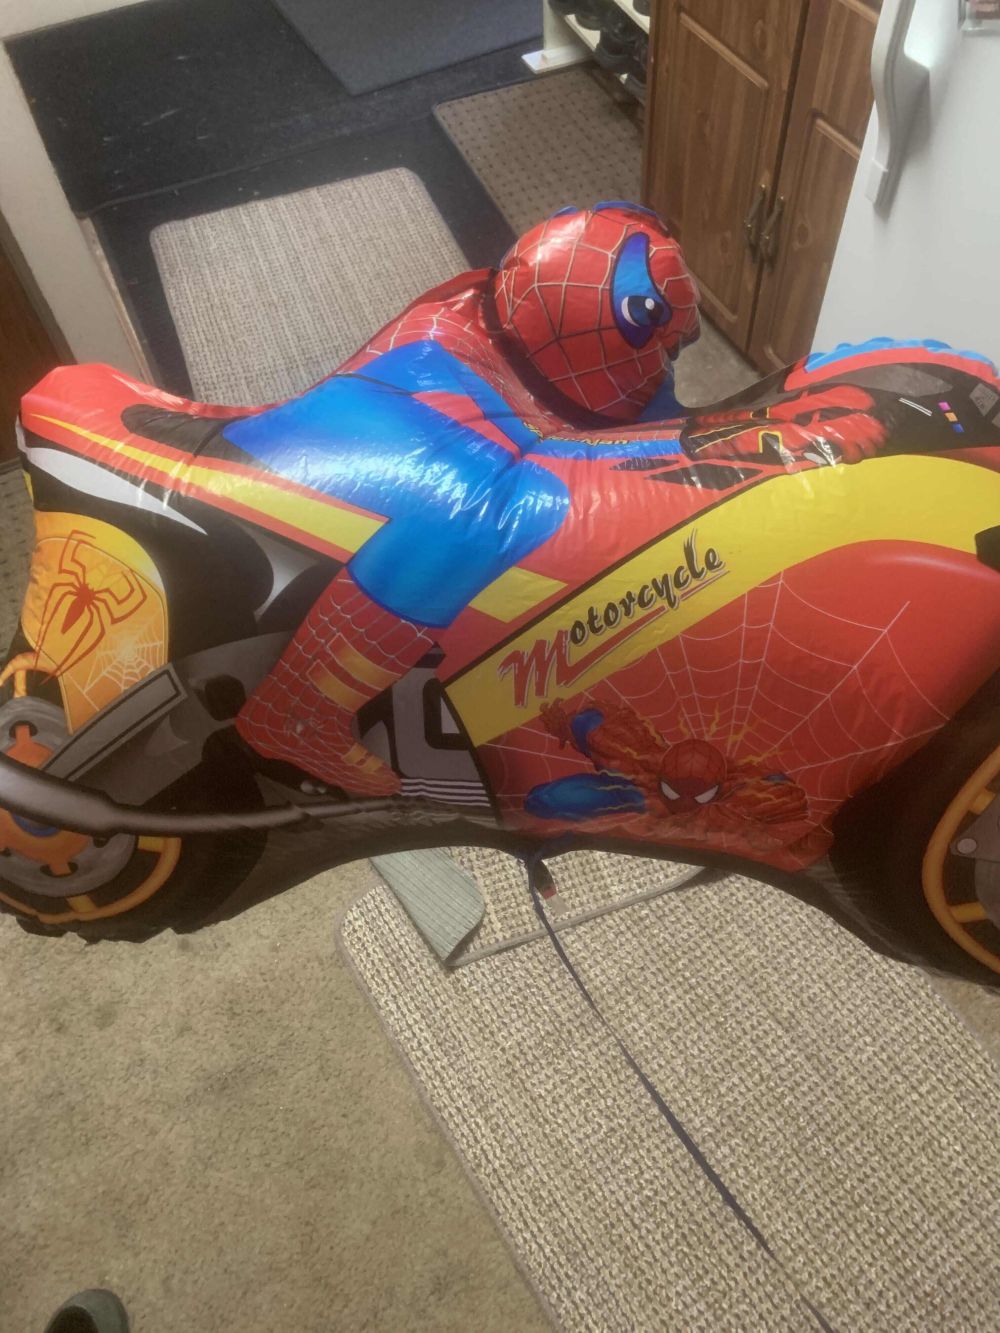 8 Objek Kocak Mainan Superhero Mengendarai Sepeda Motor, Agak Lain